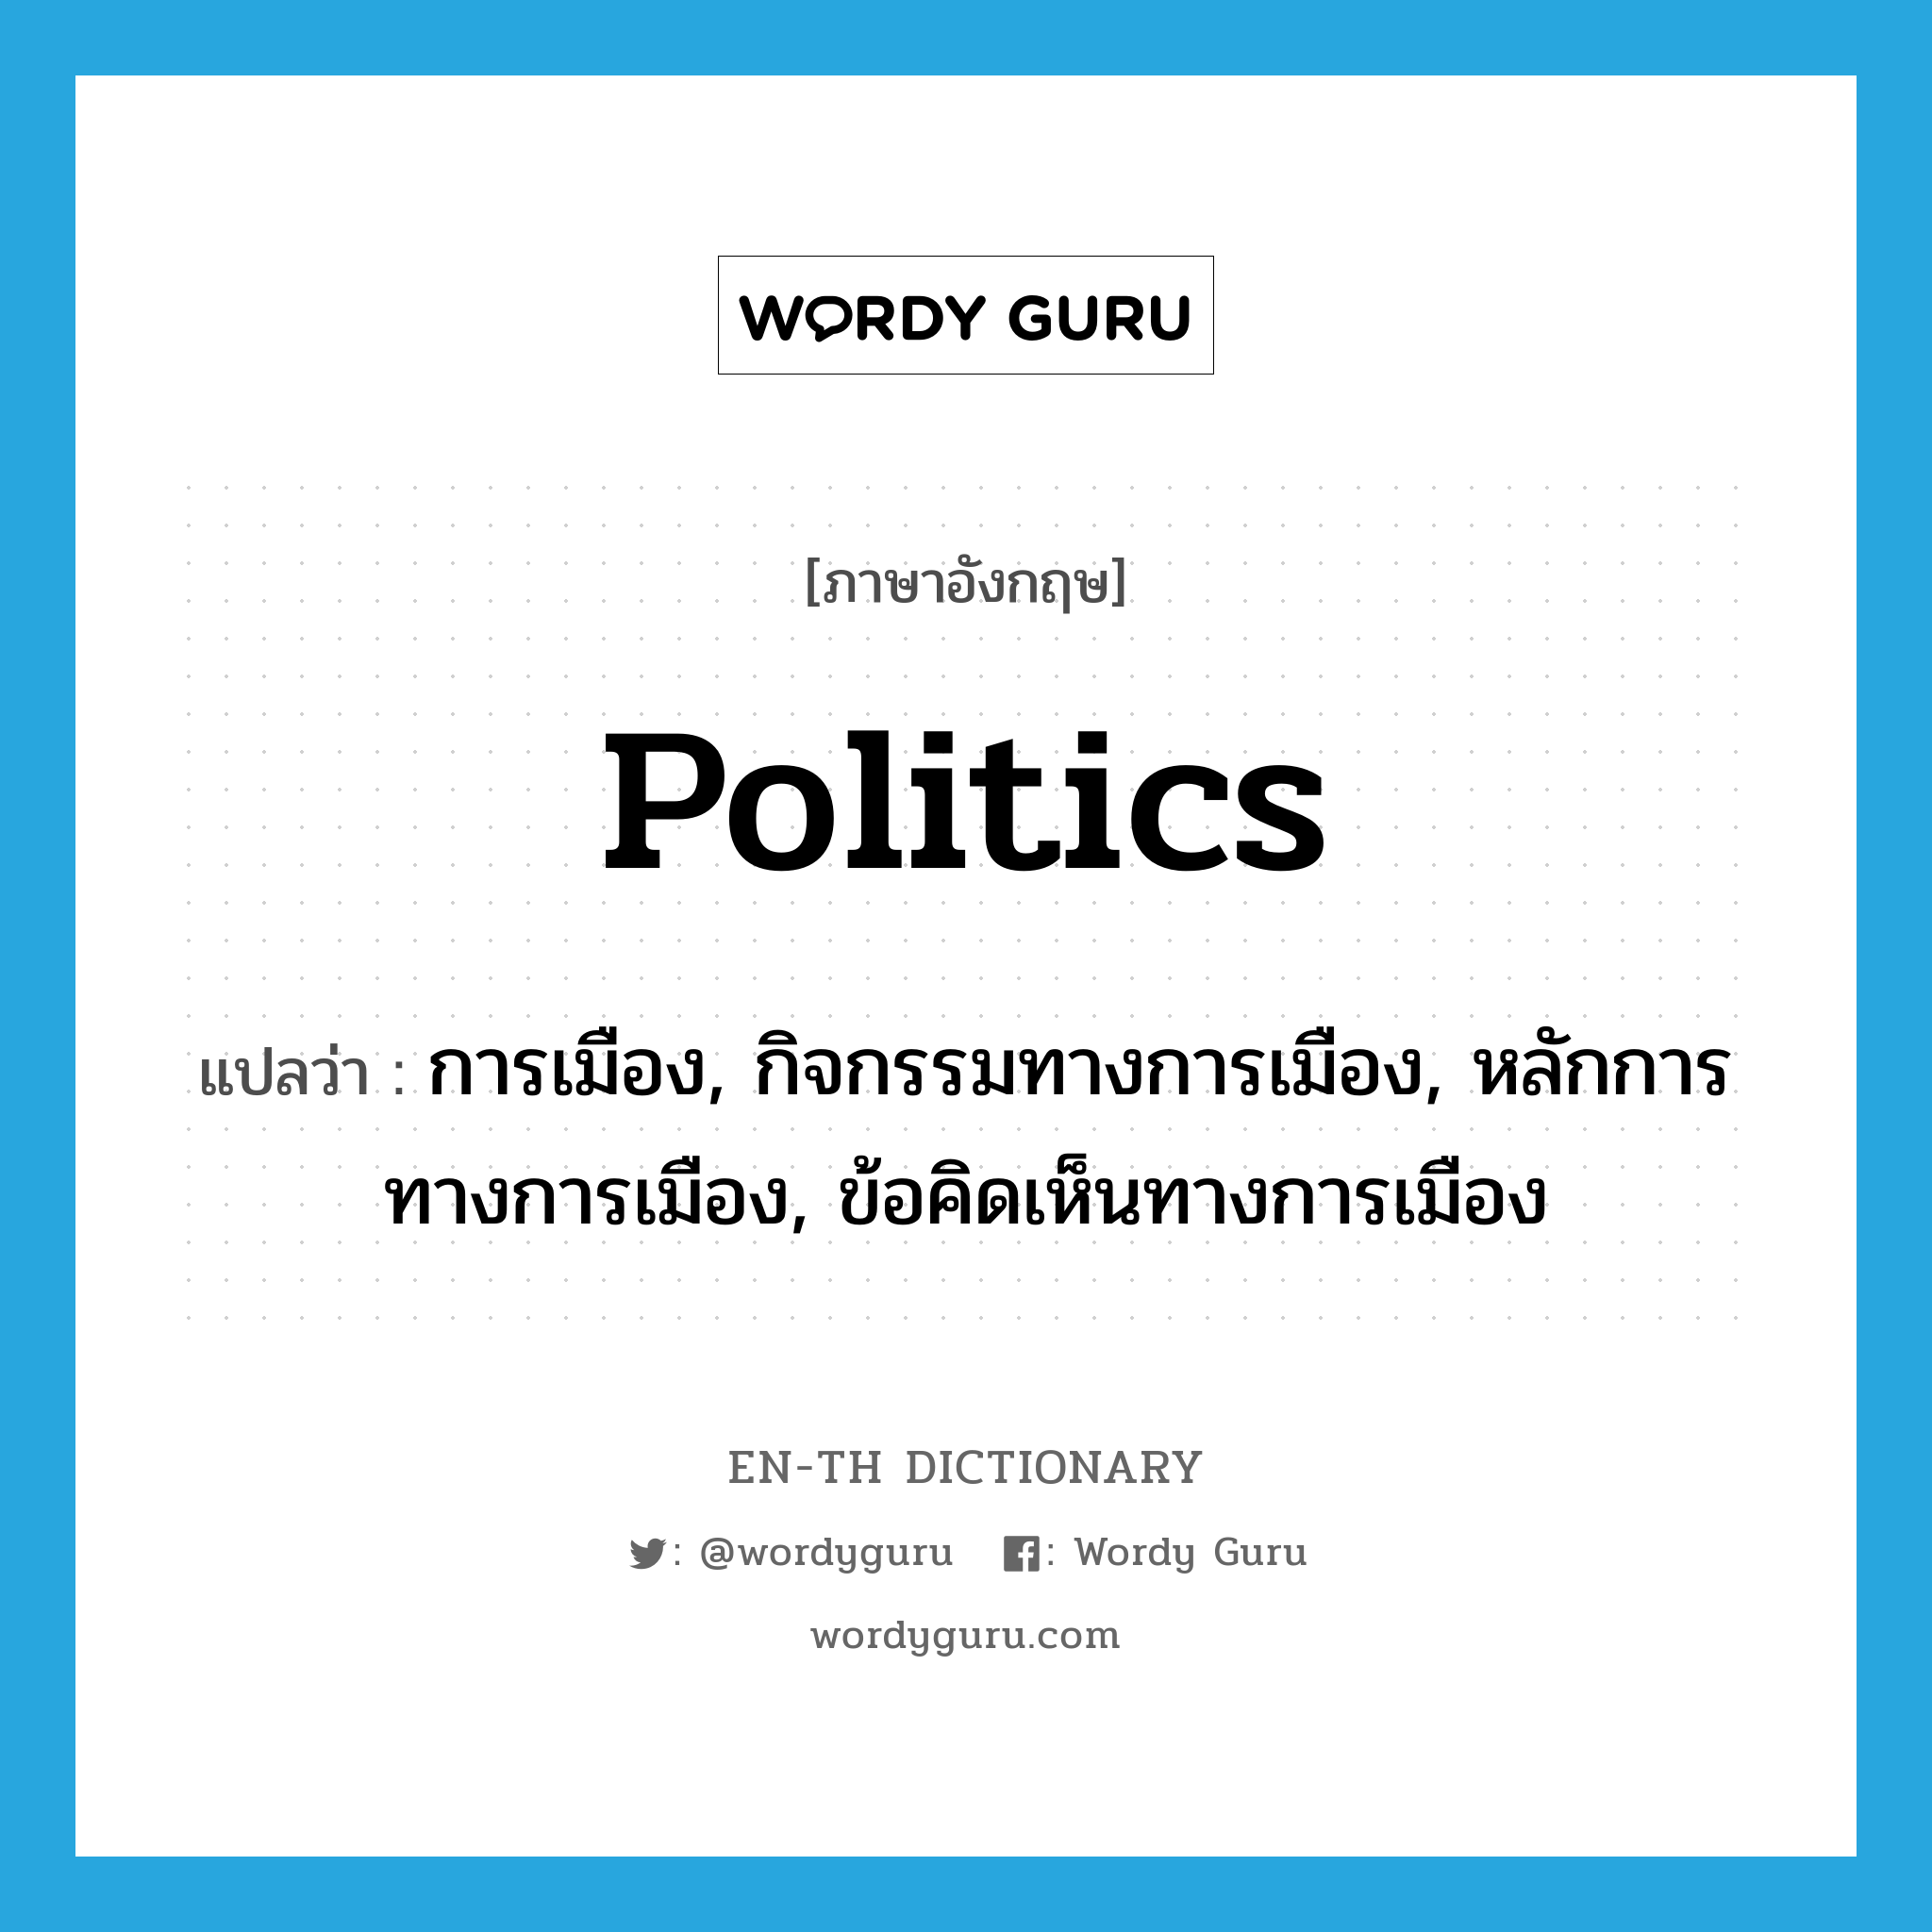 การเมือง, กิจกรรมทางการเมือง, หลักการทางการเมือง, ข้อคิดเห็นทางการเมือง ภาษาอังกฤษ?, คำศัพท์ภาษาอังกฤษ การเมือง, กิจกรรมทางการเมือง, หลักการทางการเมือง, ข้อคิดเห็นทางการเมือง แปลว่า politics ประเภท N หมวด N